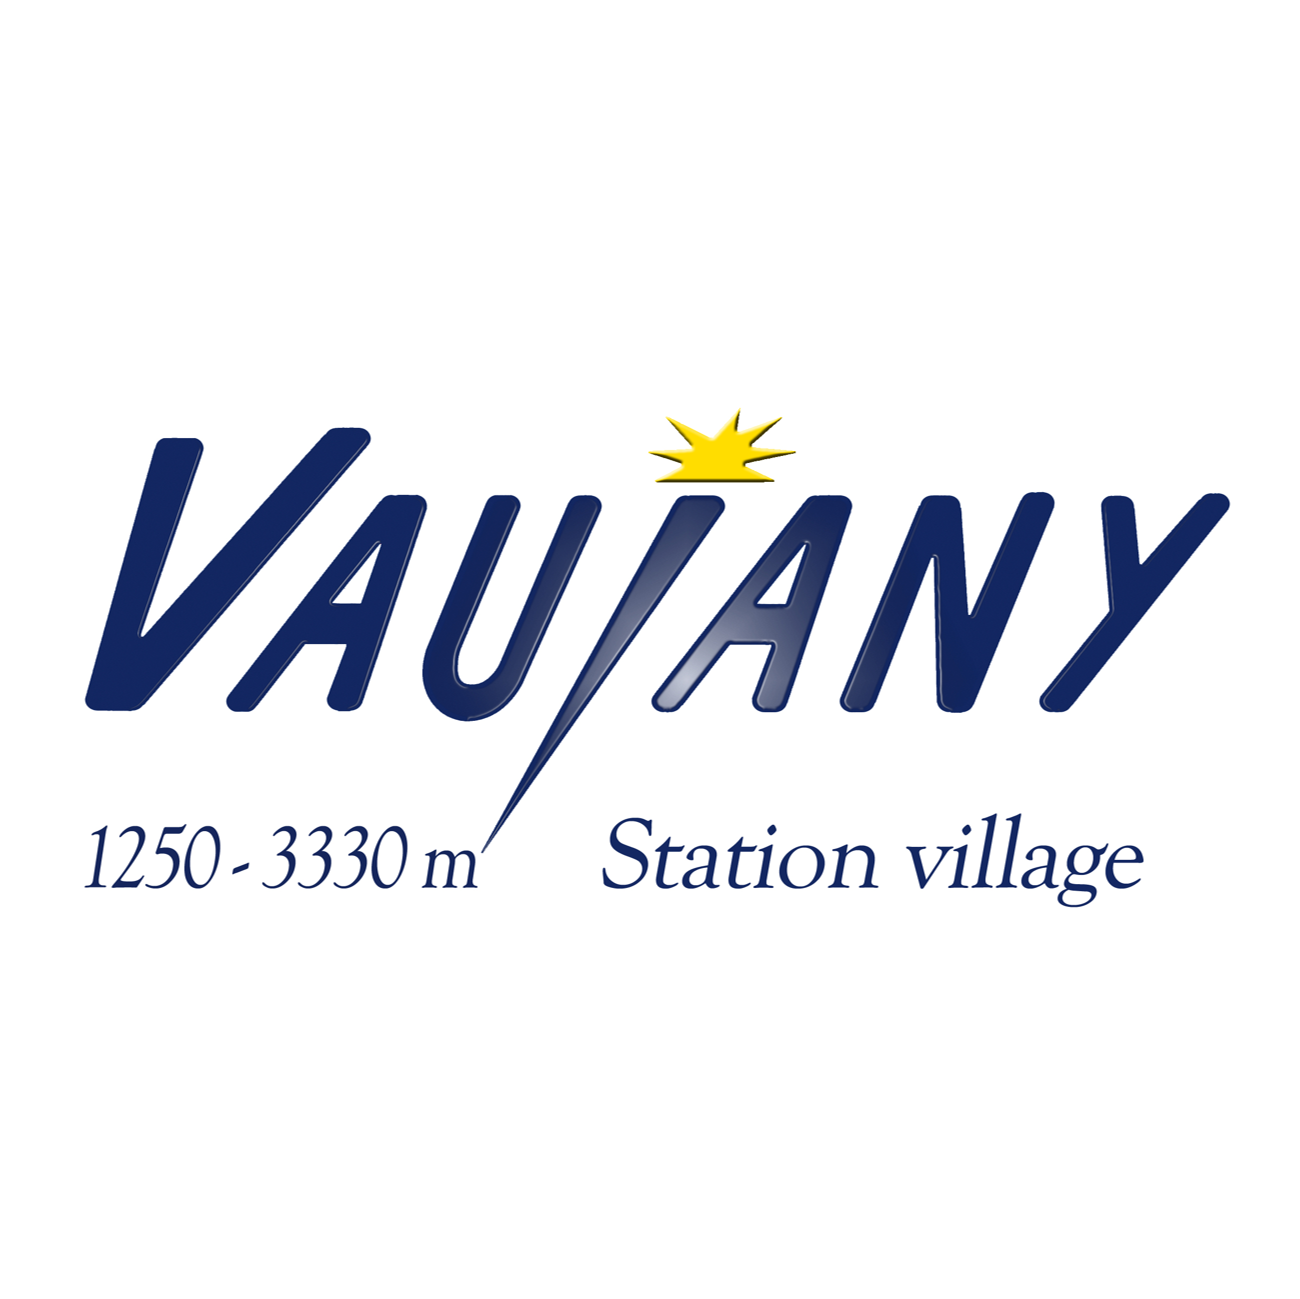 Logo Vaujany